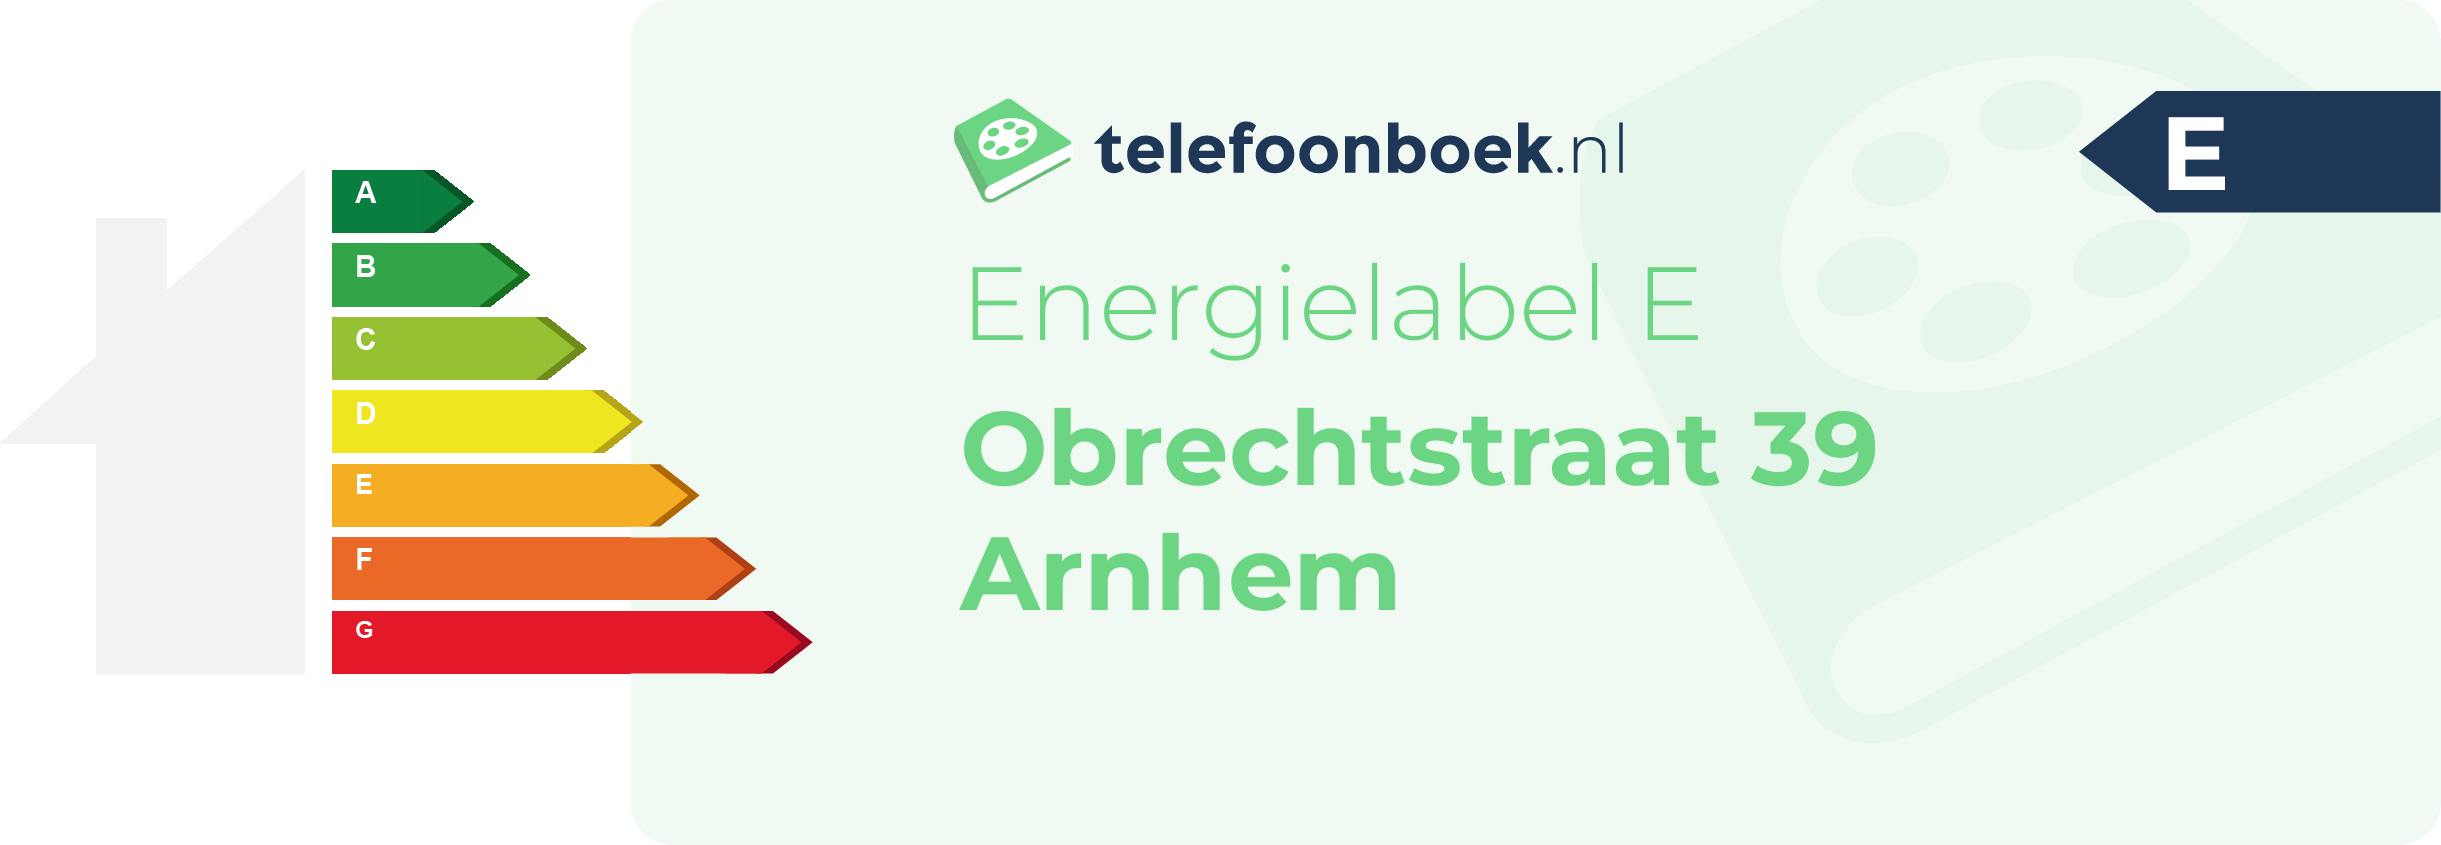 Energielabel Obrechtstraat 39 Arnhem